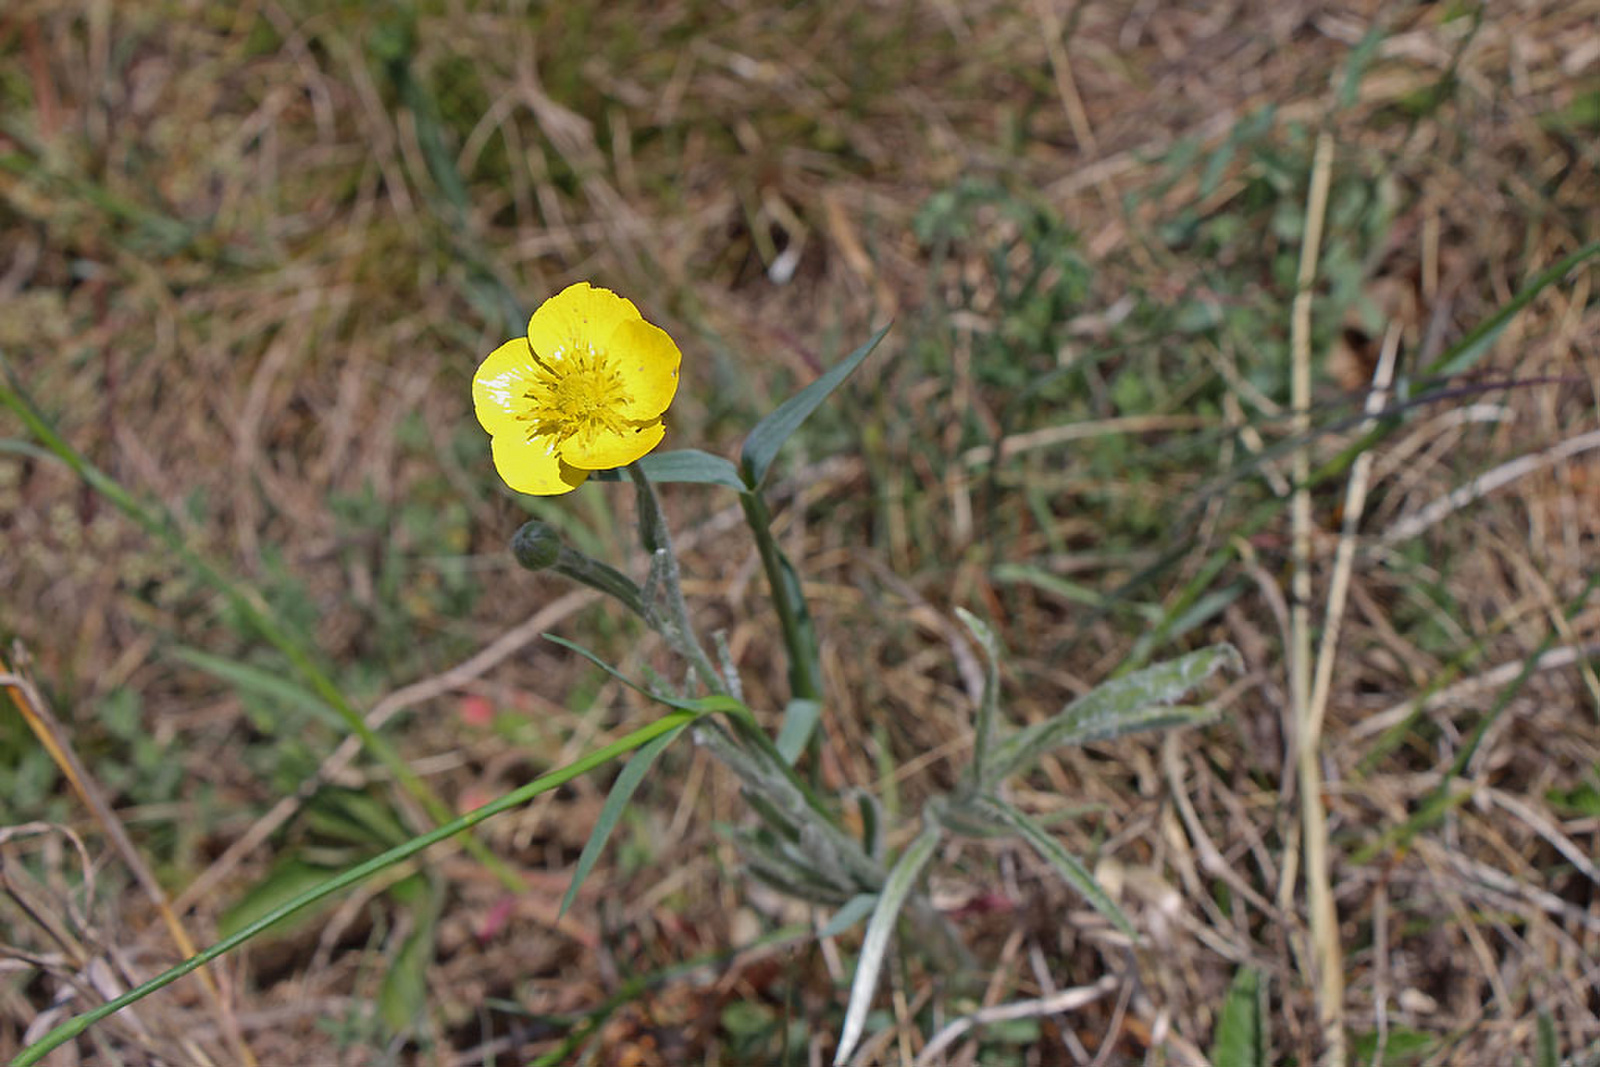 Ranunculus illyricus - selymes boglárka